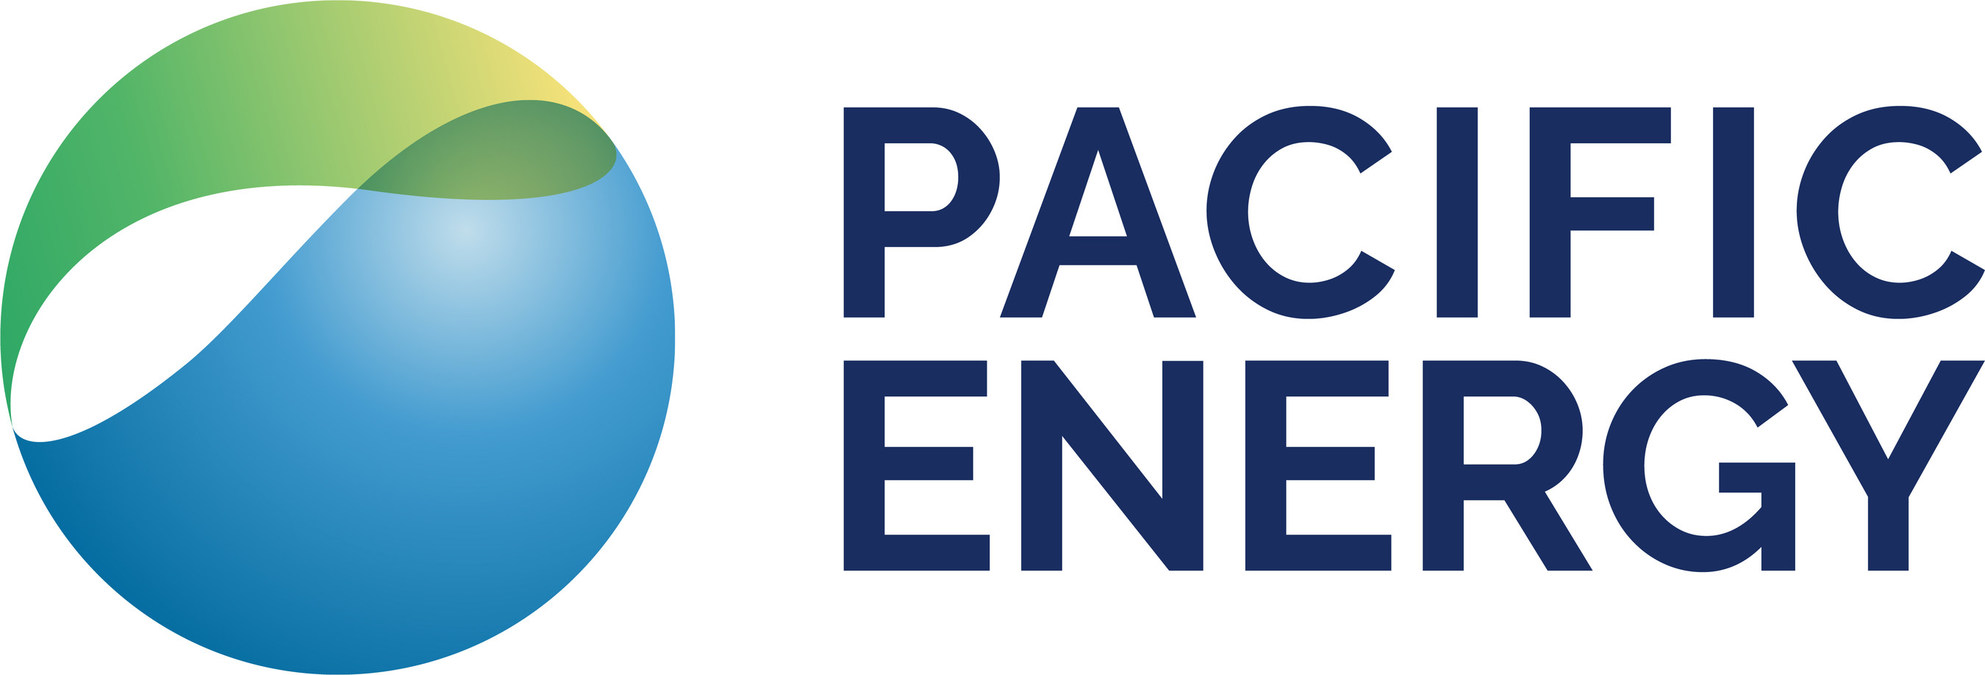 Pacific energy